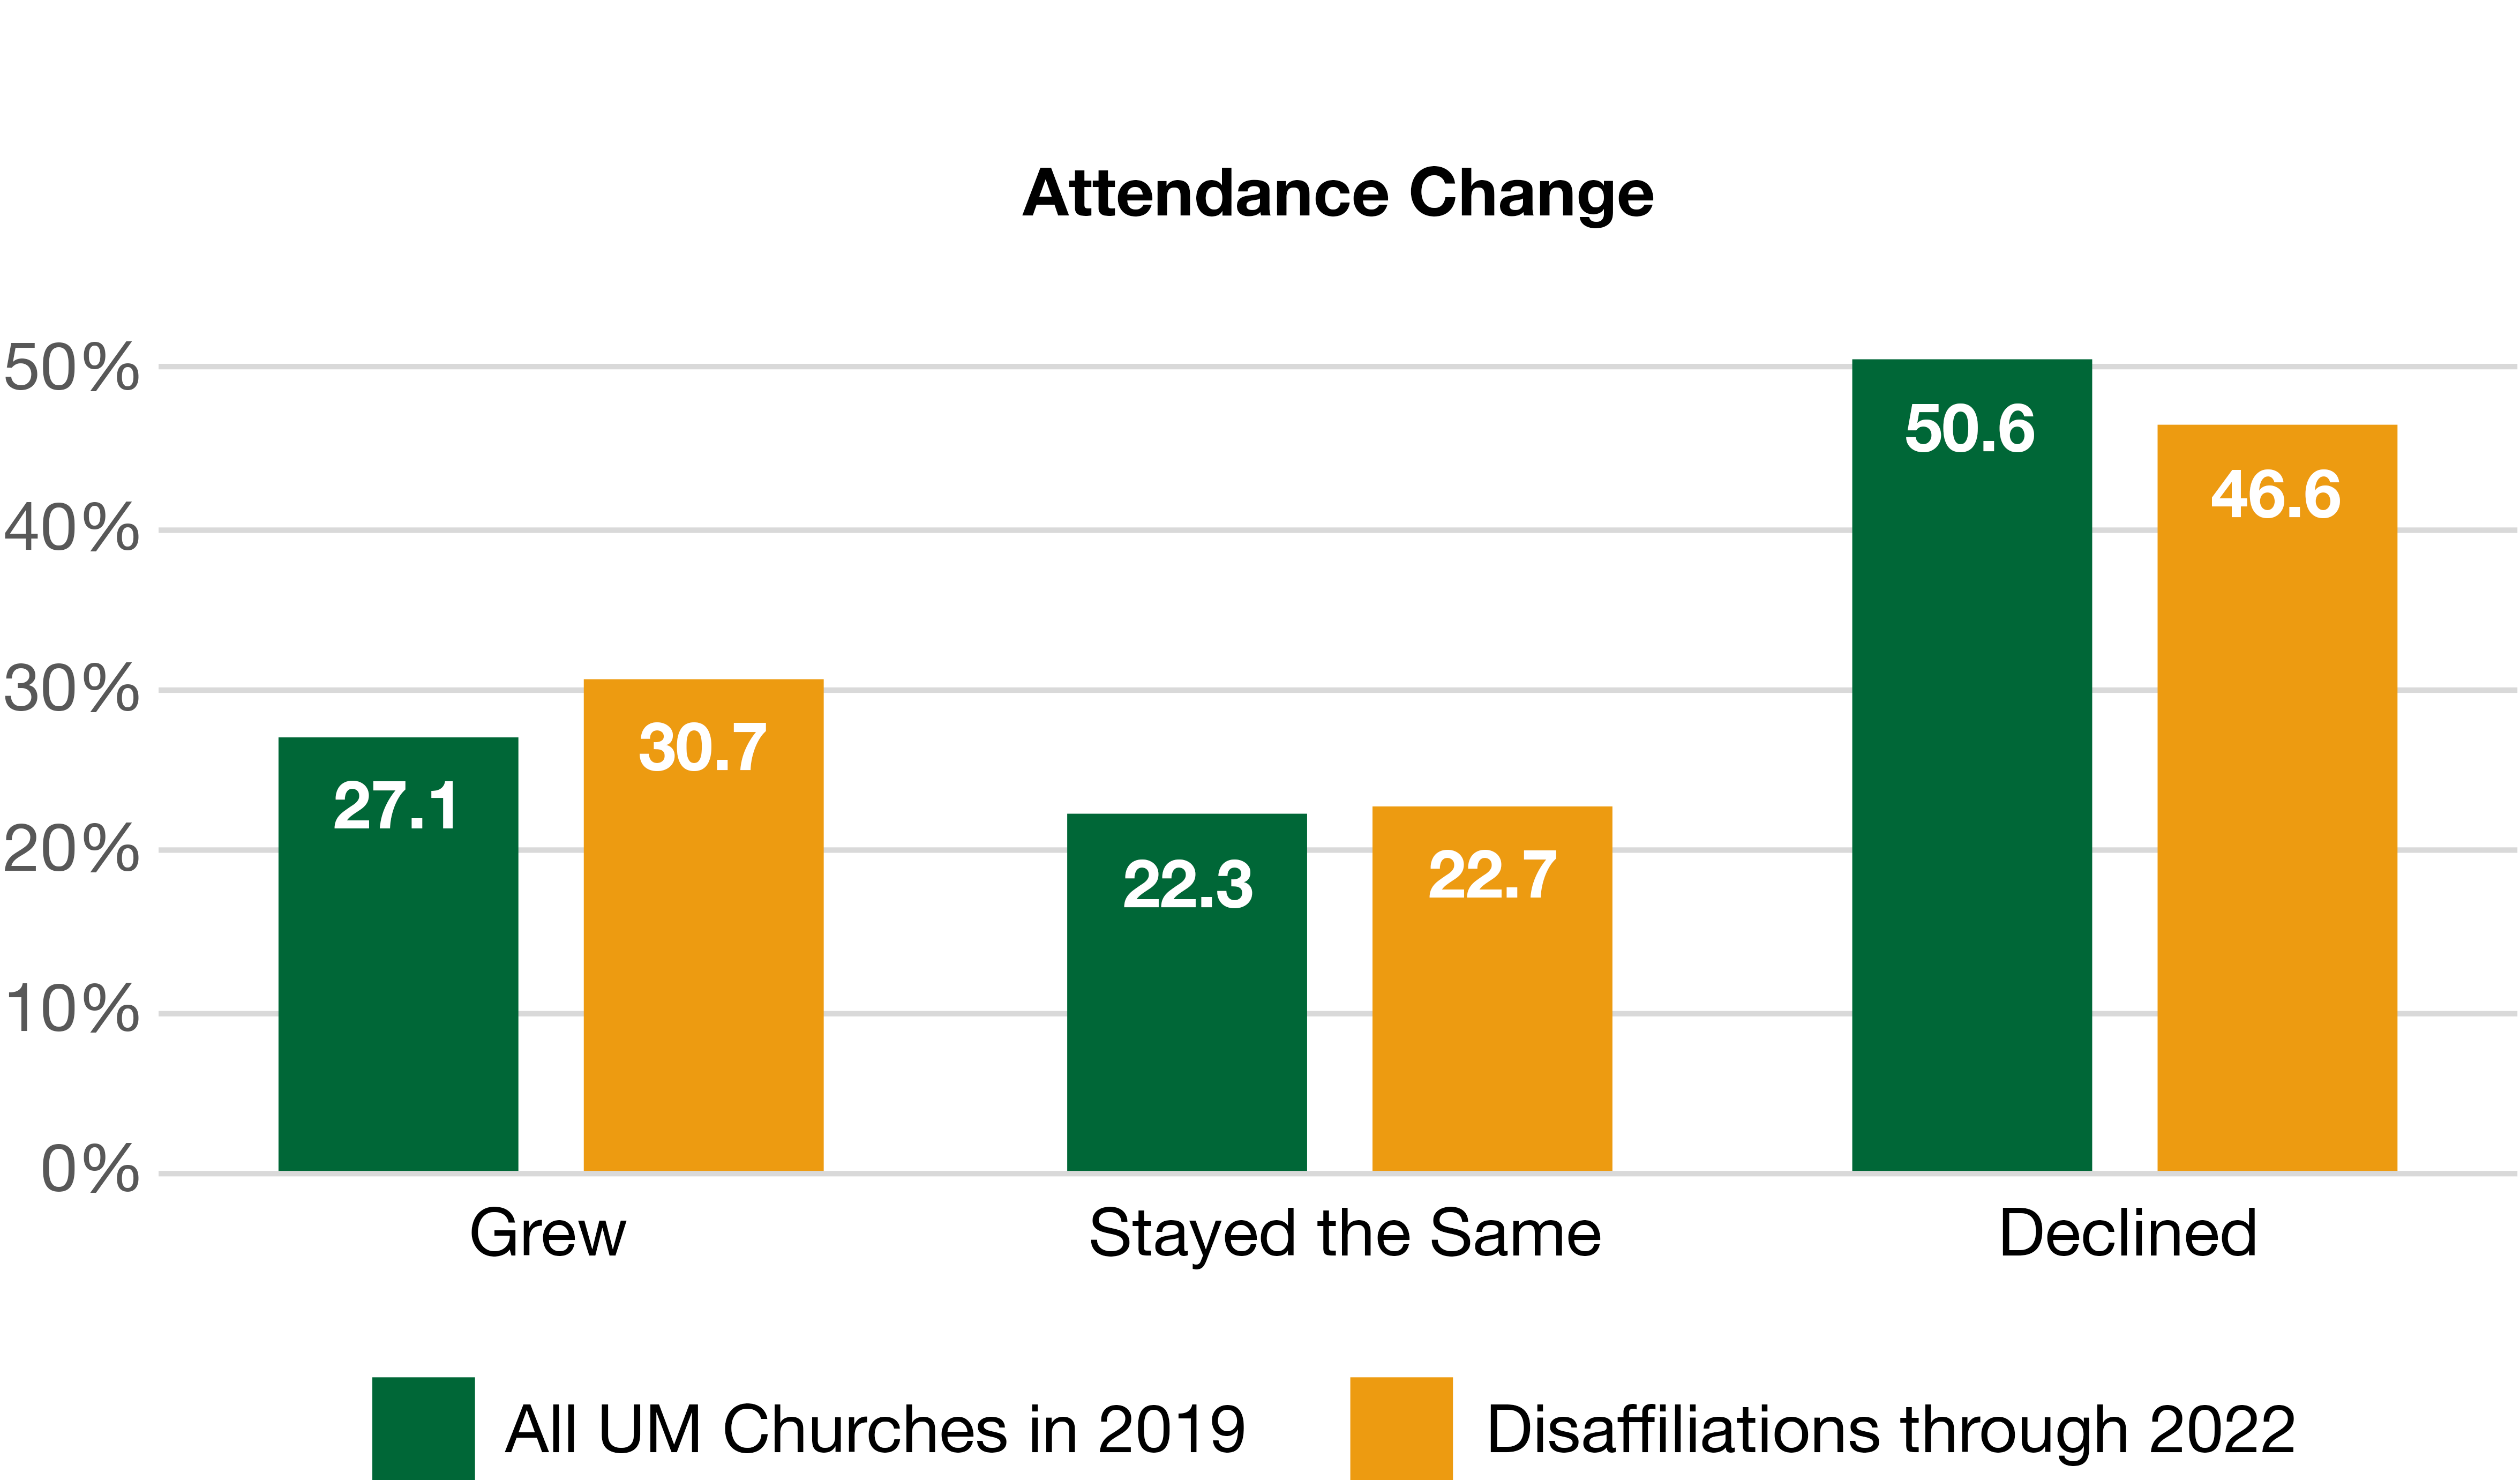 Attendance Change bar graph